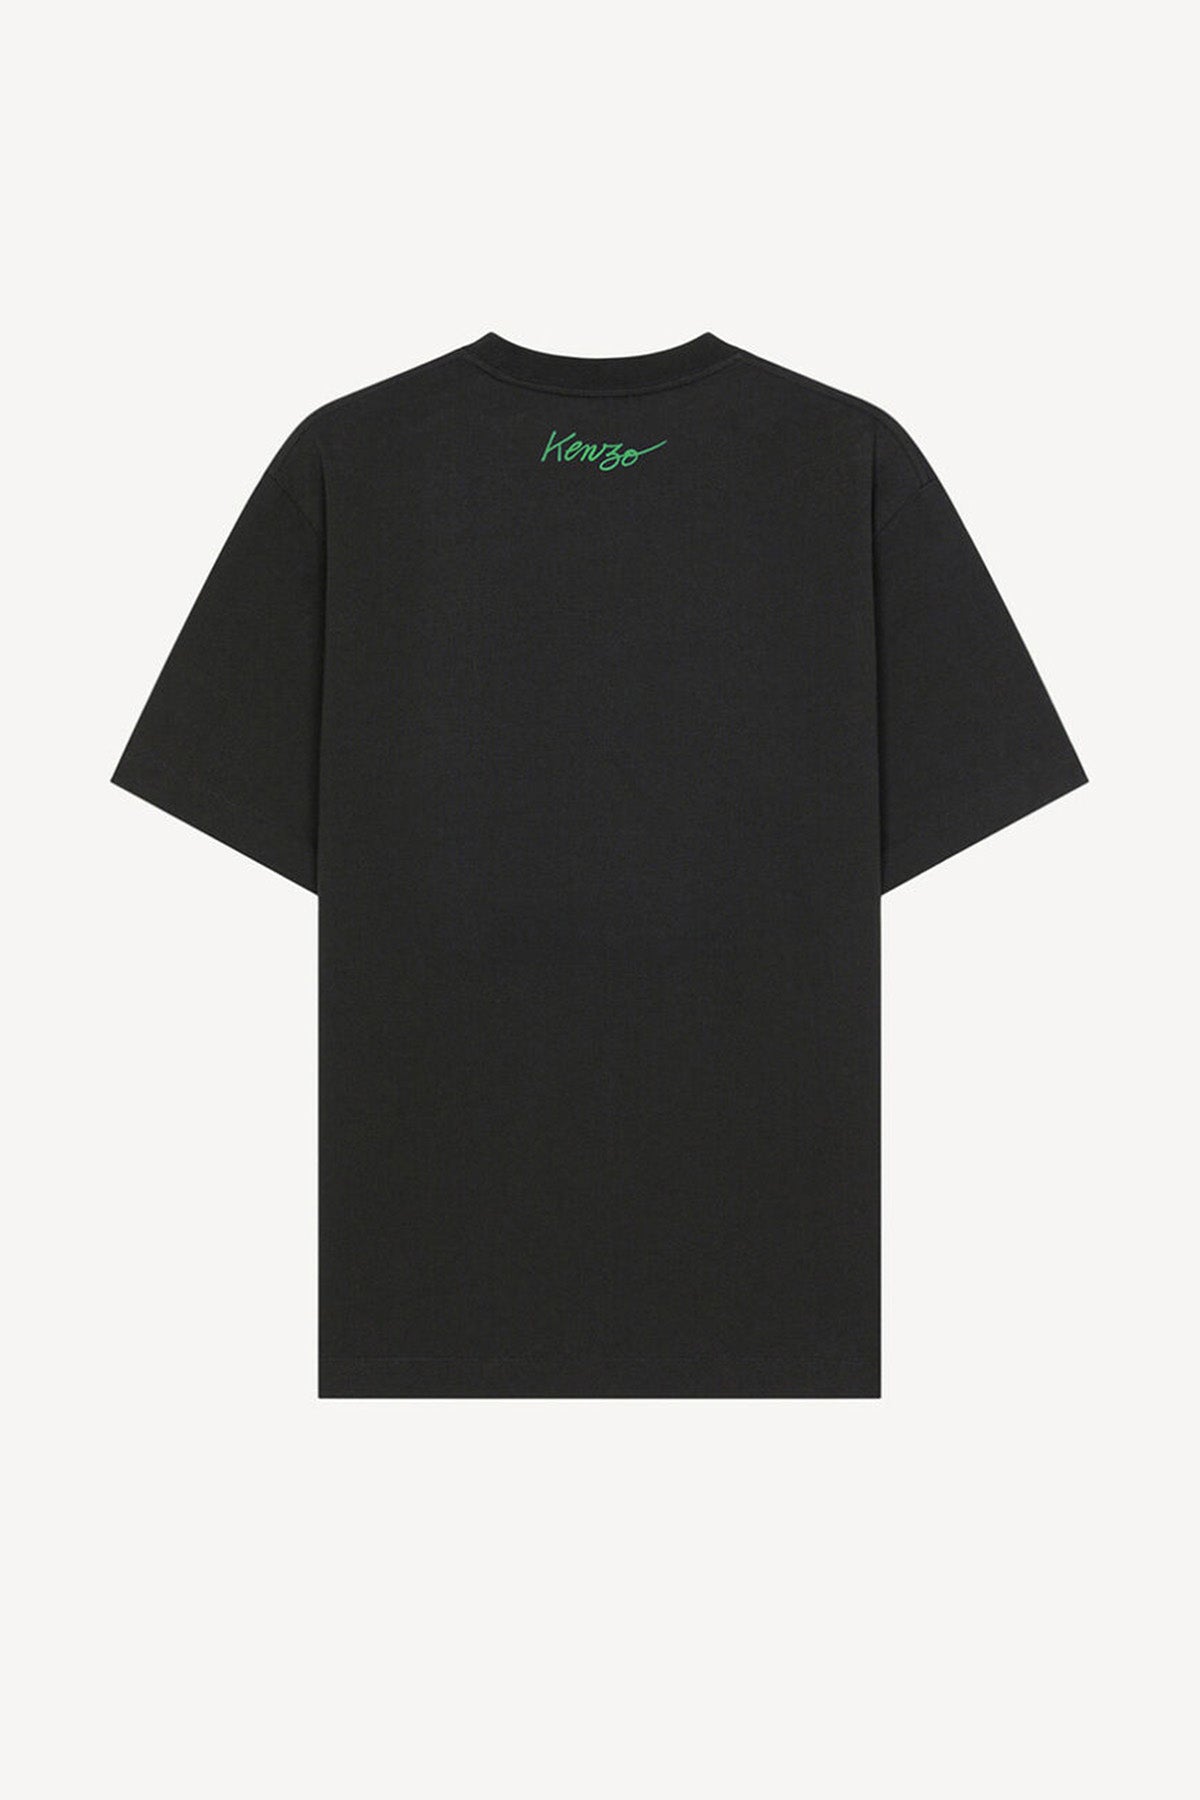 Kenzo Big Poppy Logolu T-shirt-Libas Trendy Fashion Store